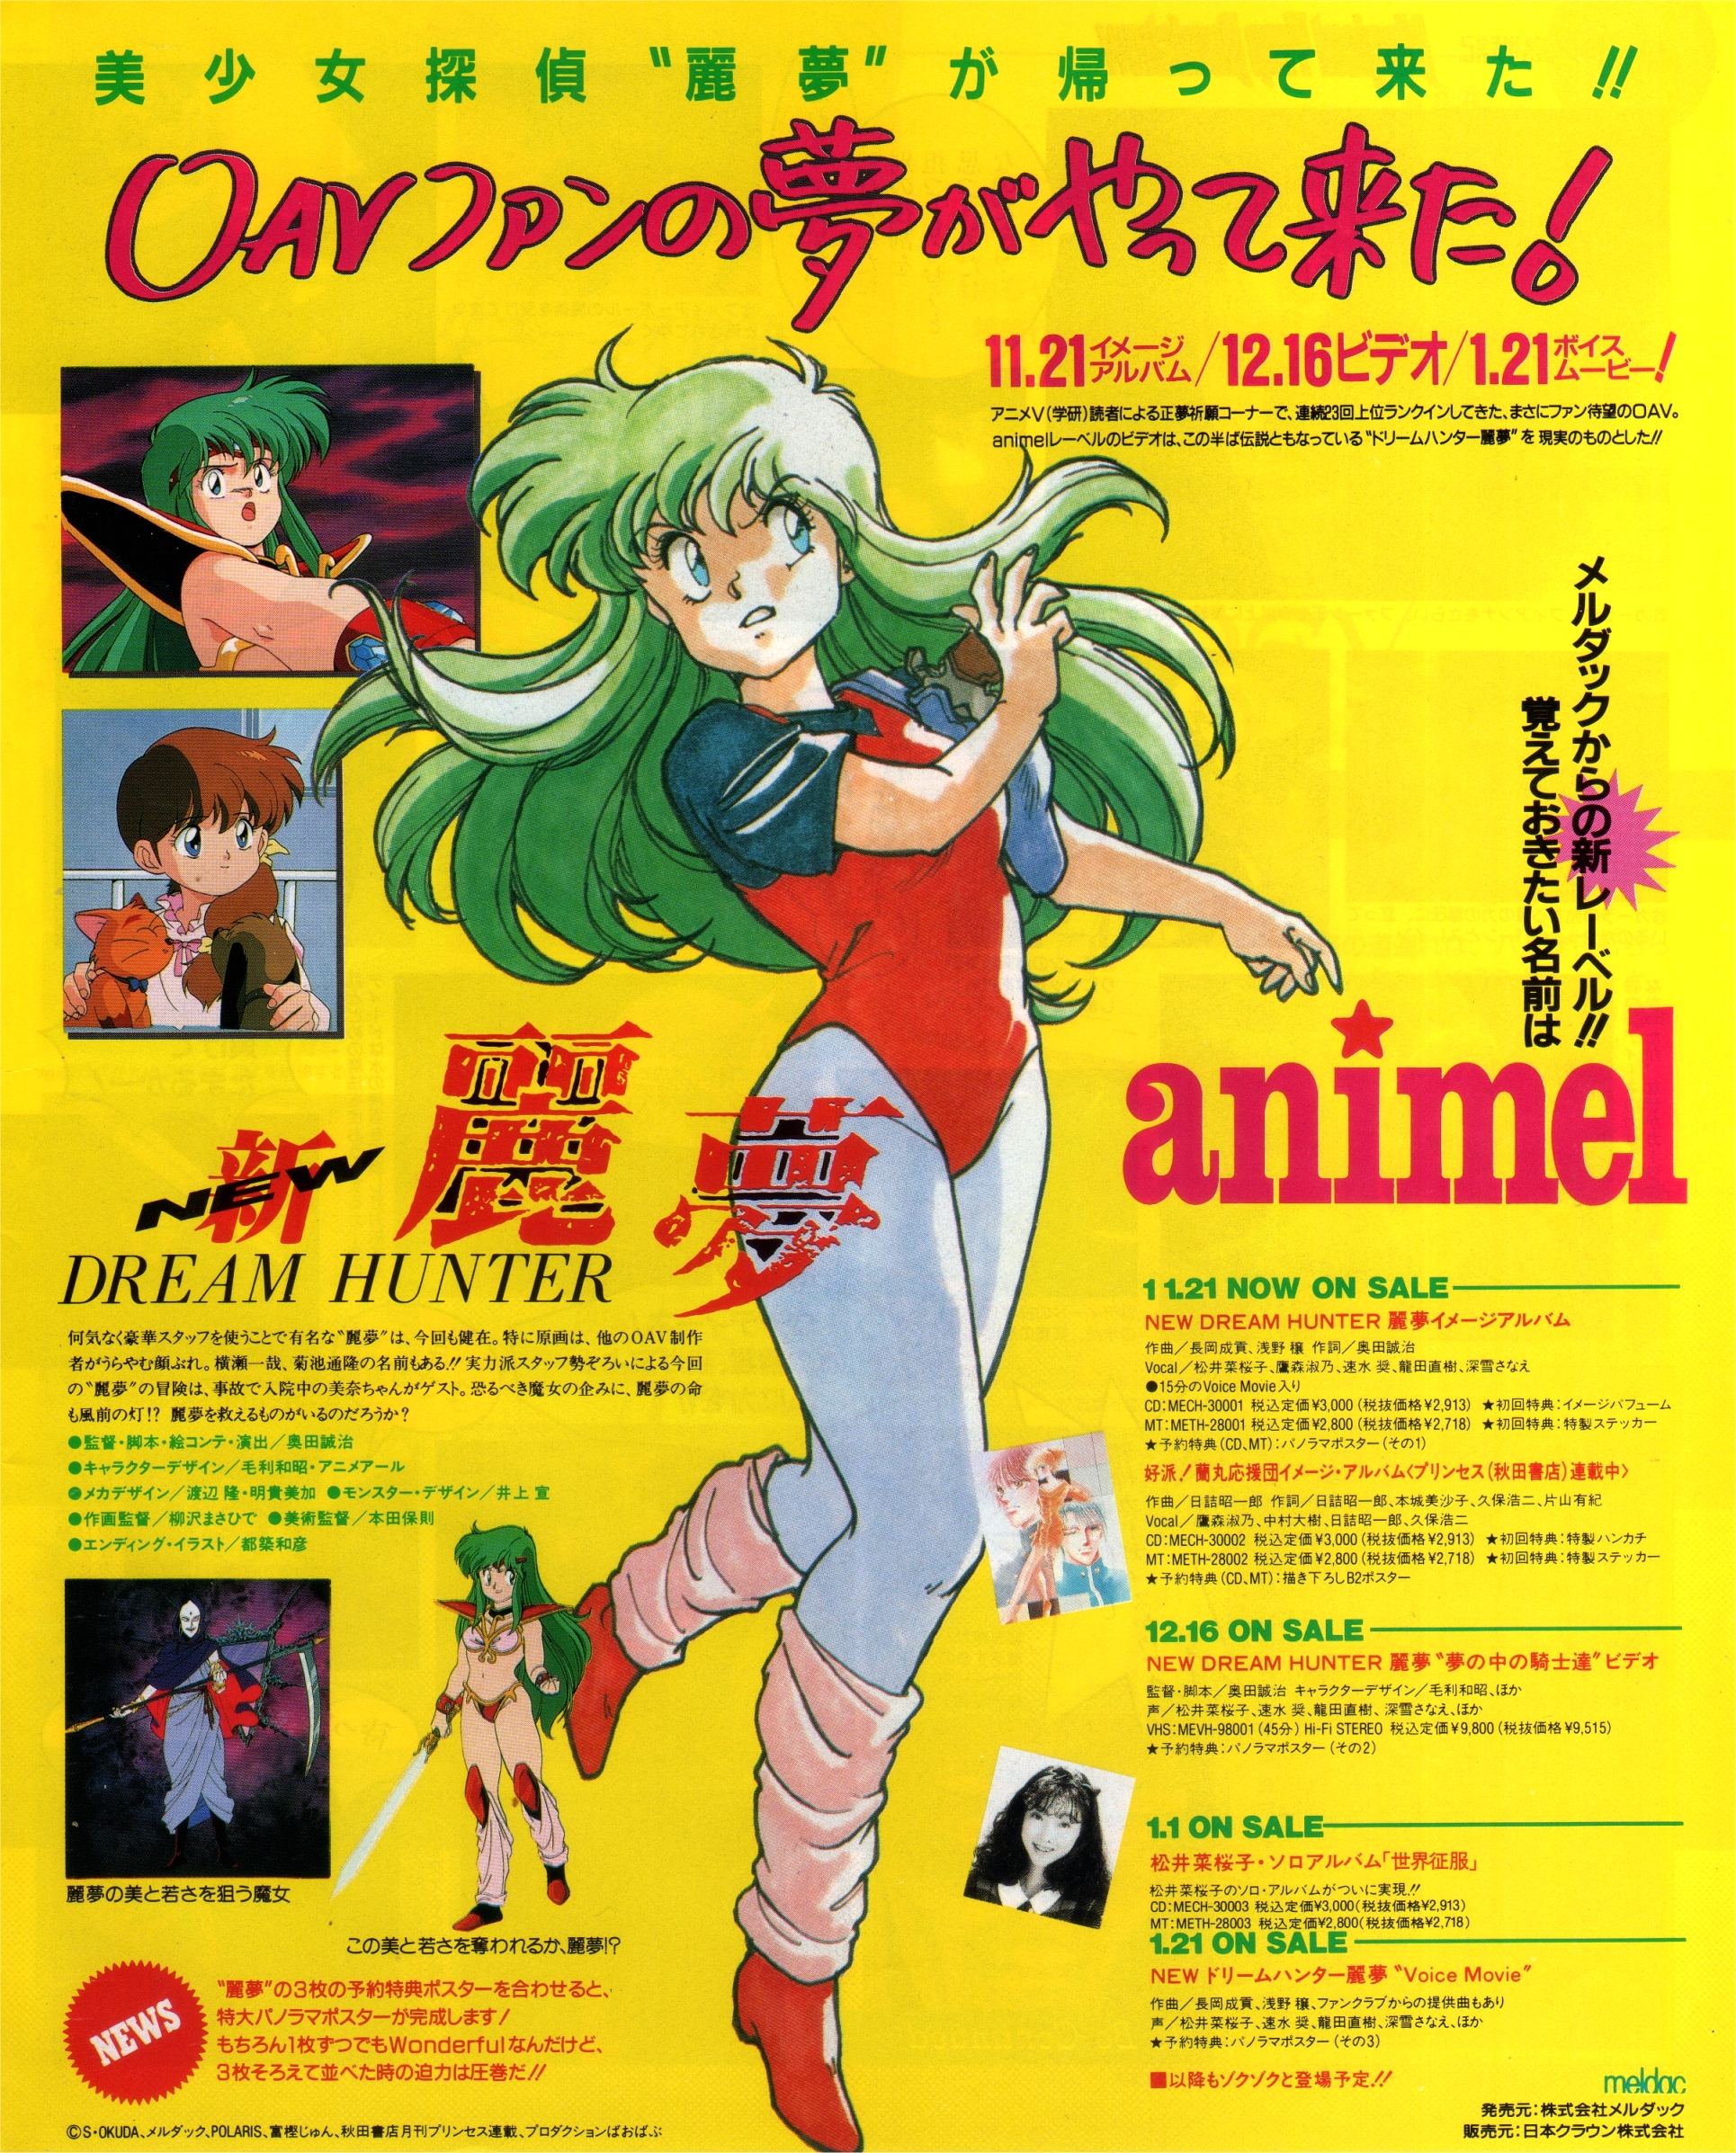 Animarchive Dream Hunter Rem Anime V Magazine 01 1991 T Co Vizf3byiqy T Co Chyhwrjlfe Twitter